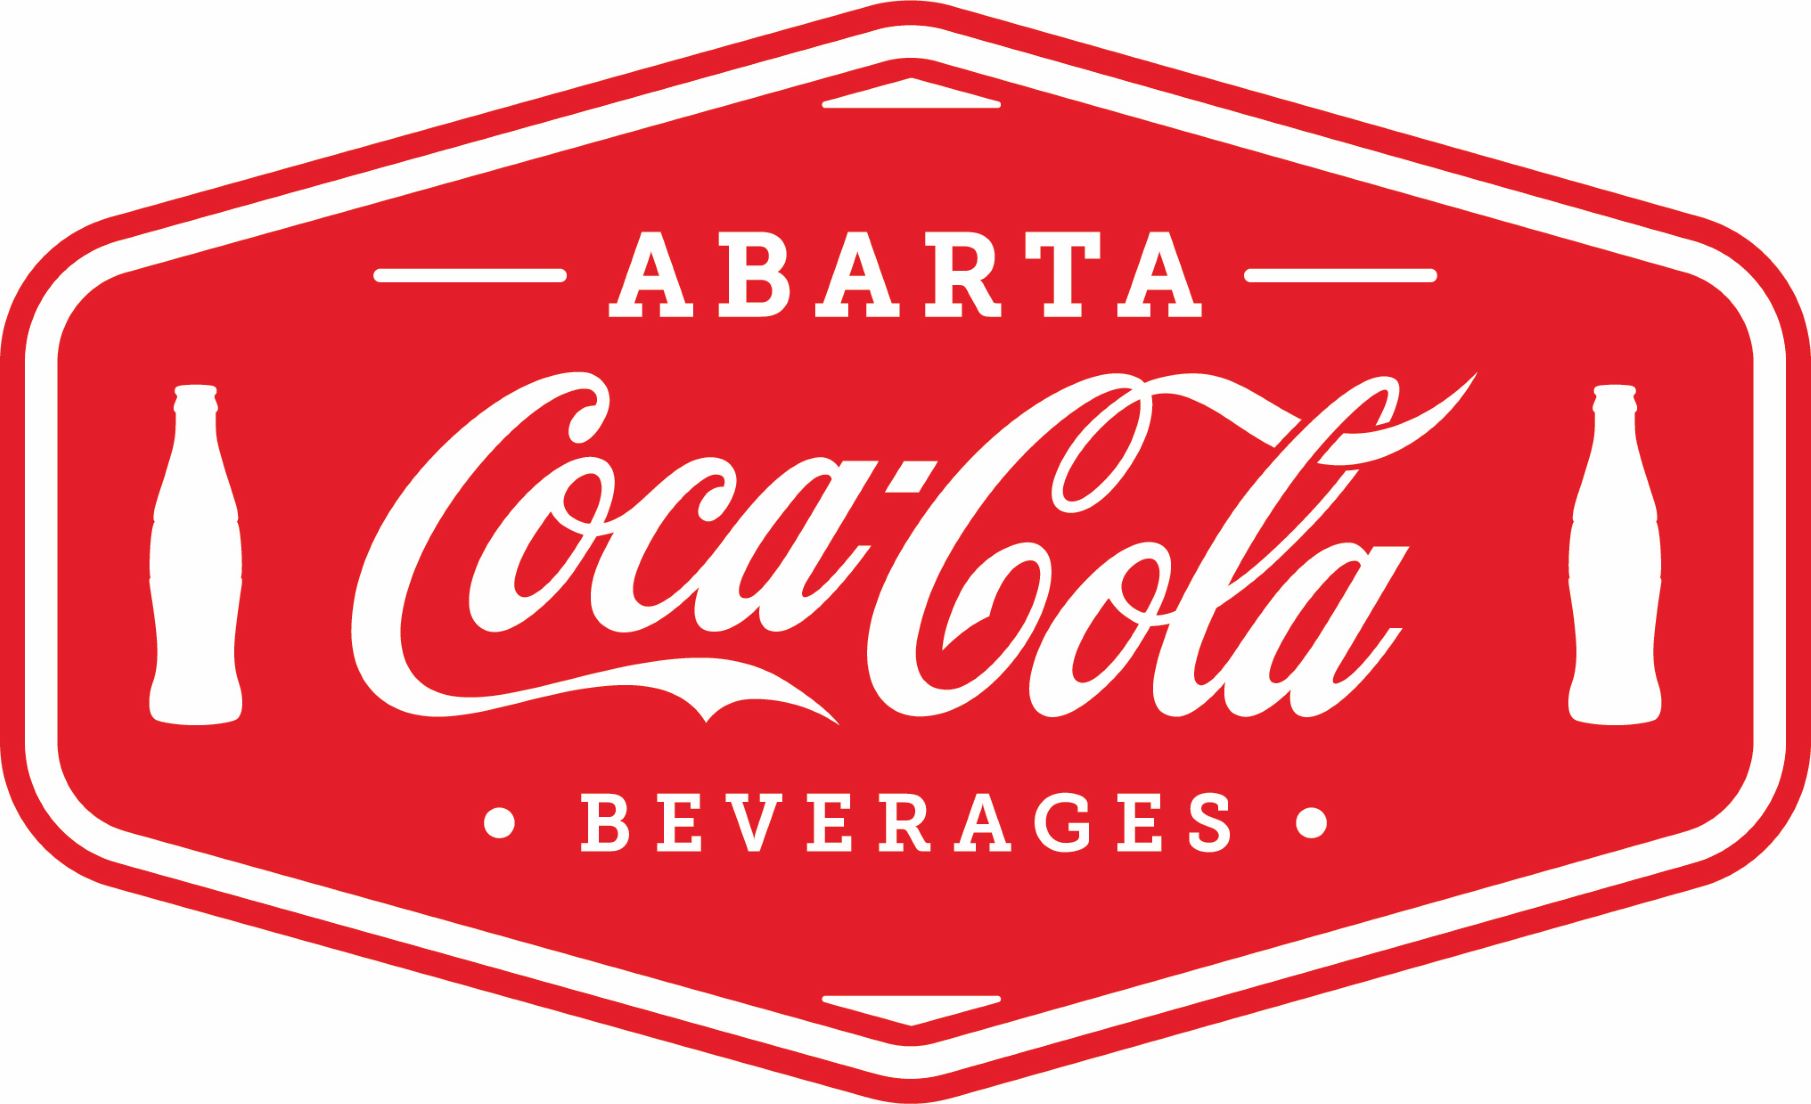 Abarta Coca-Cola